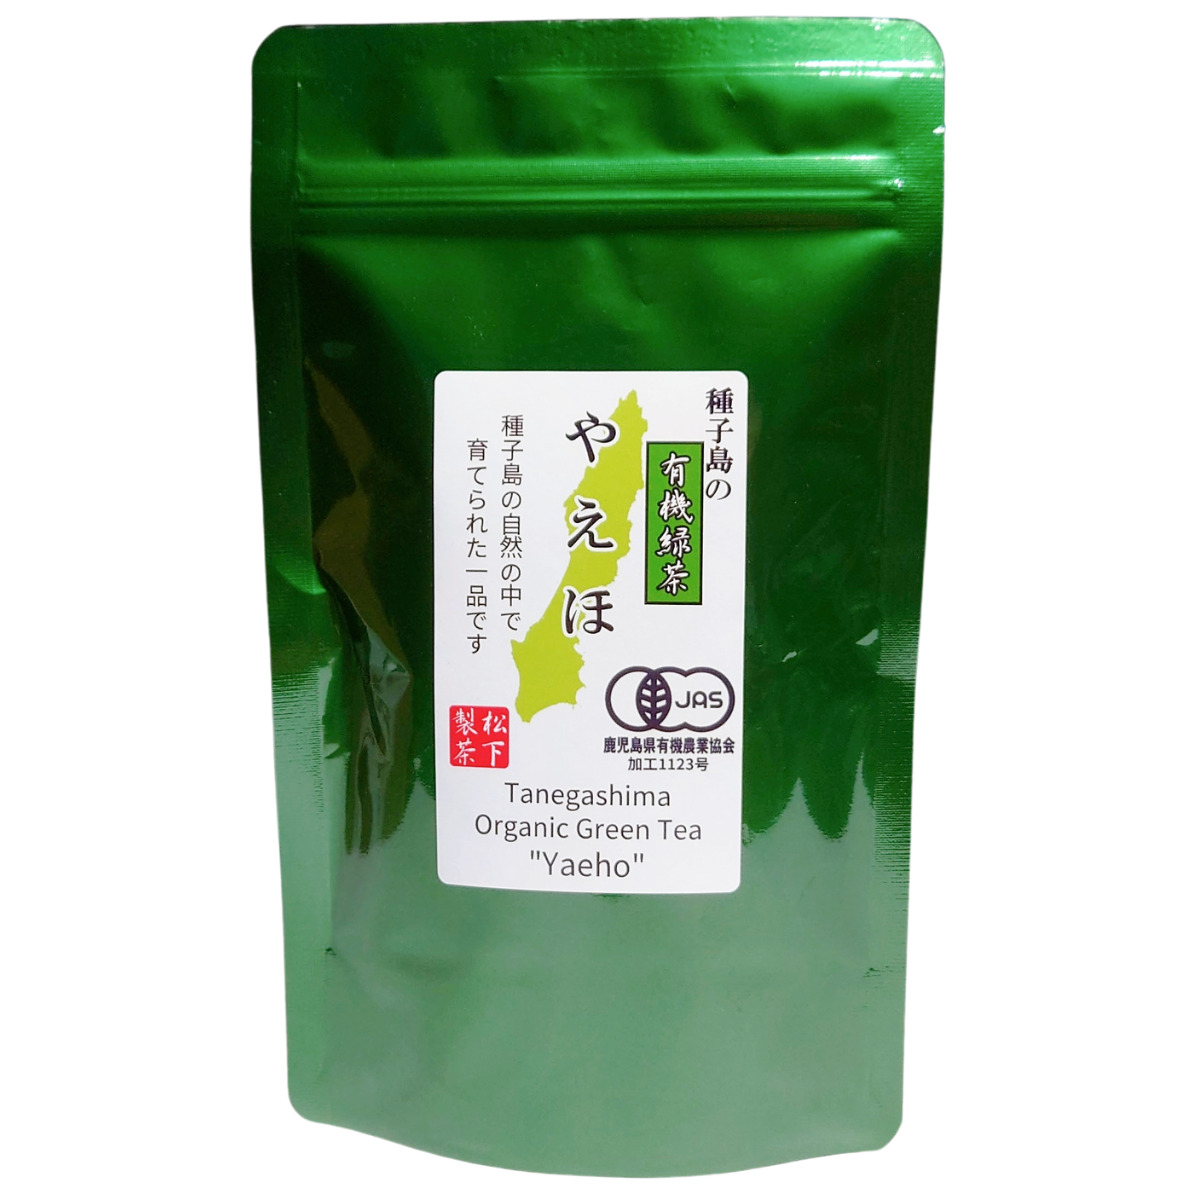 種子島の有機緑茶『やえほ』 茶葉(リーフ) 100g 松下製茶